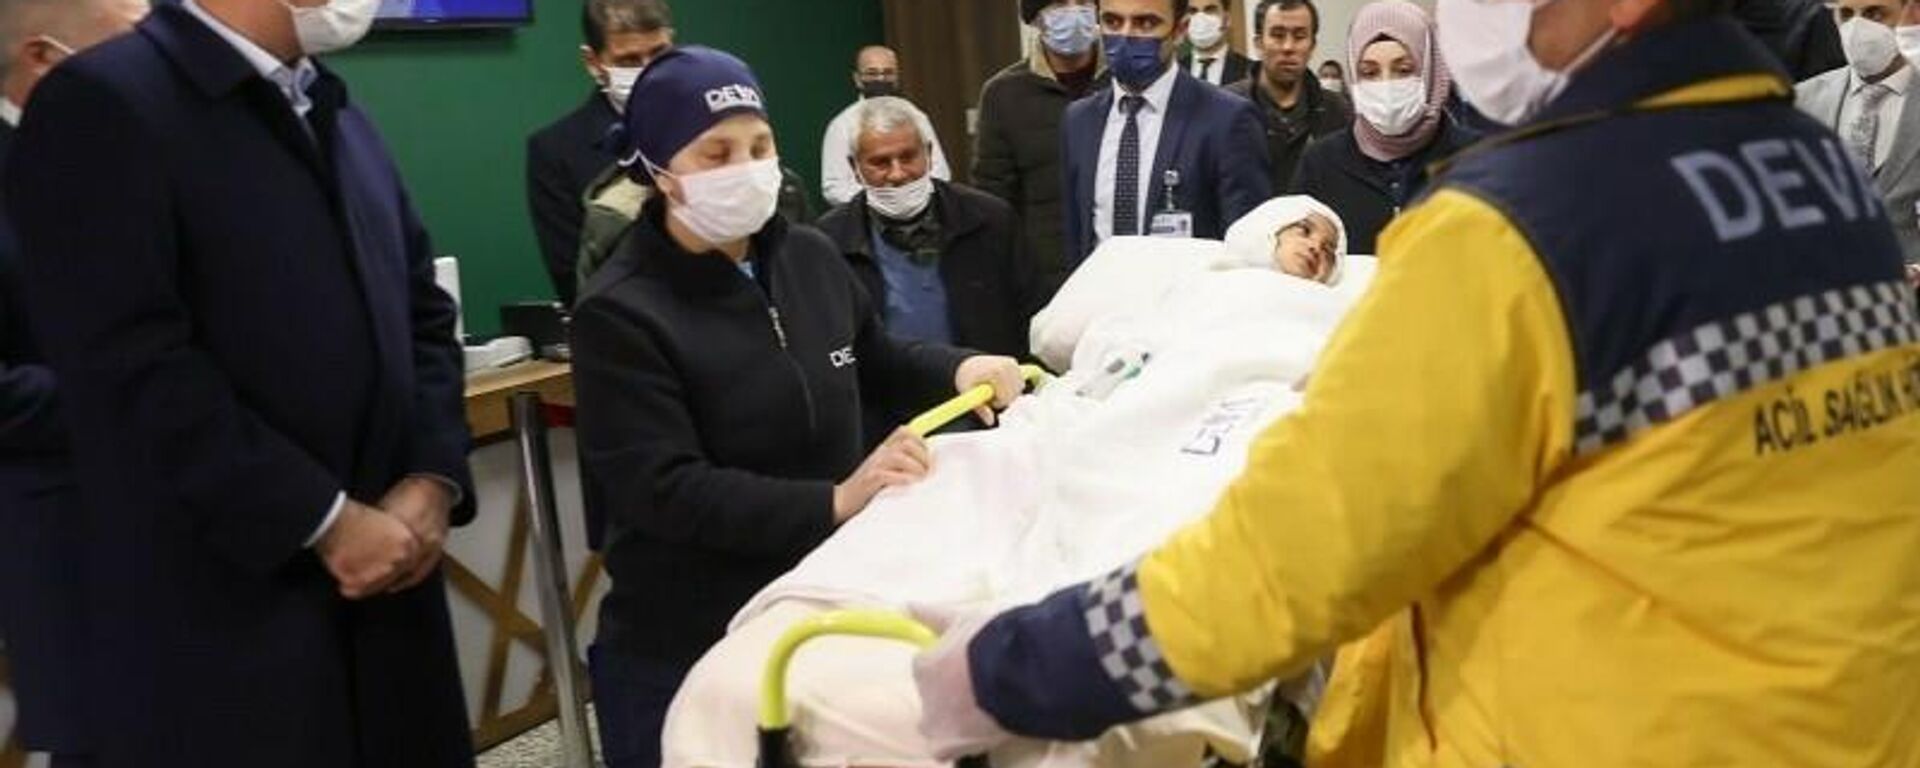 Gaziantep'te pitbull cinsi 2 köpeğin saldırısında ağır yaralanan 4 yaşındaki Asiye Ateş'e Antalya Akdeniz Üniversitesi'nde Prof. Dr. Ömer Özkan ve ekibi tarafından yapılan ilk seans ameliyatı gerçekleştirildi. Yapılan açıklamada, “Şu an itibariyle hem nakledilen dokular sağlıklı hem de hastanın yaşam bulguları stabildir” ifadelerine yer verildi. - Sputnik Türkiye, 1920, 04.01.2022